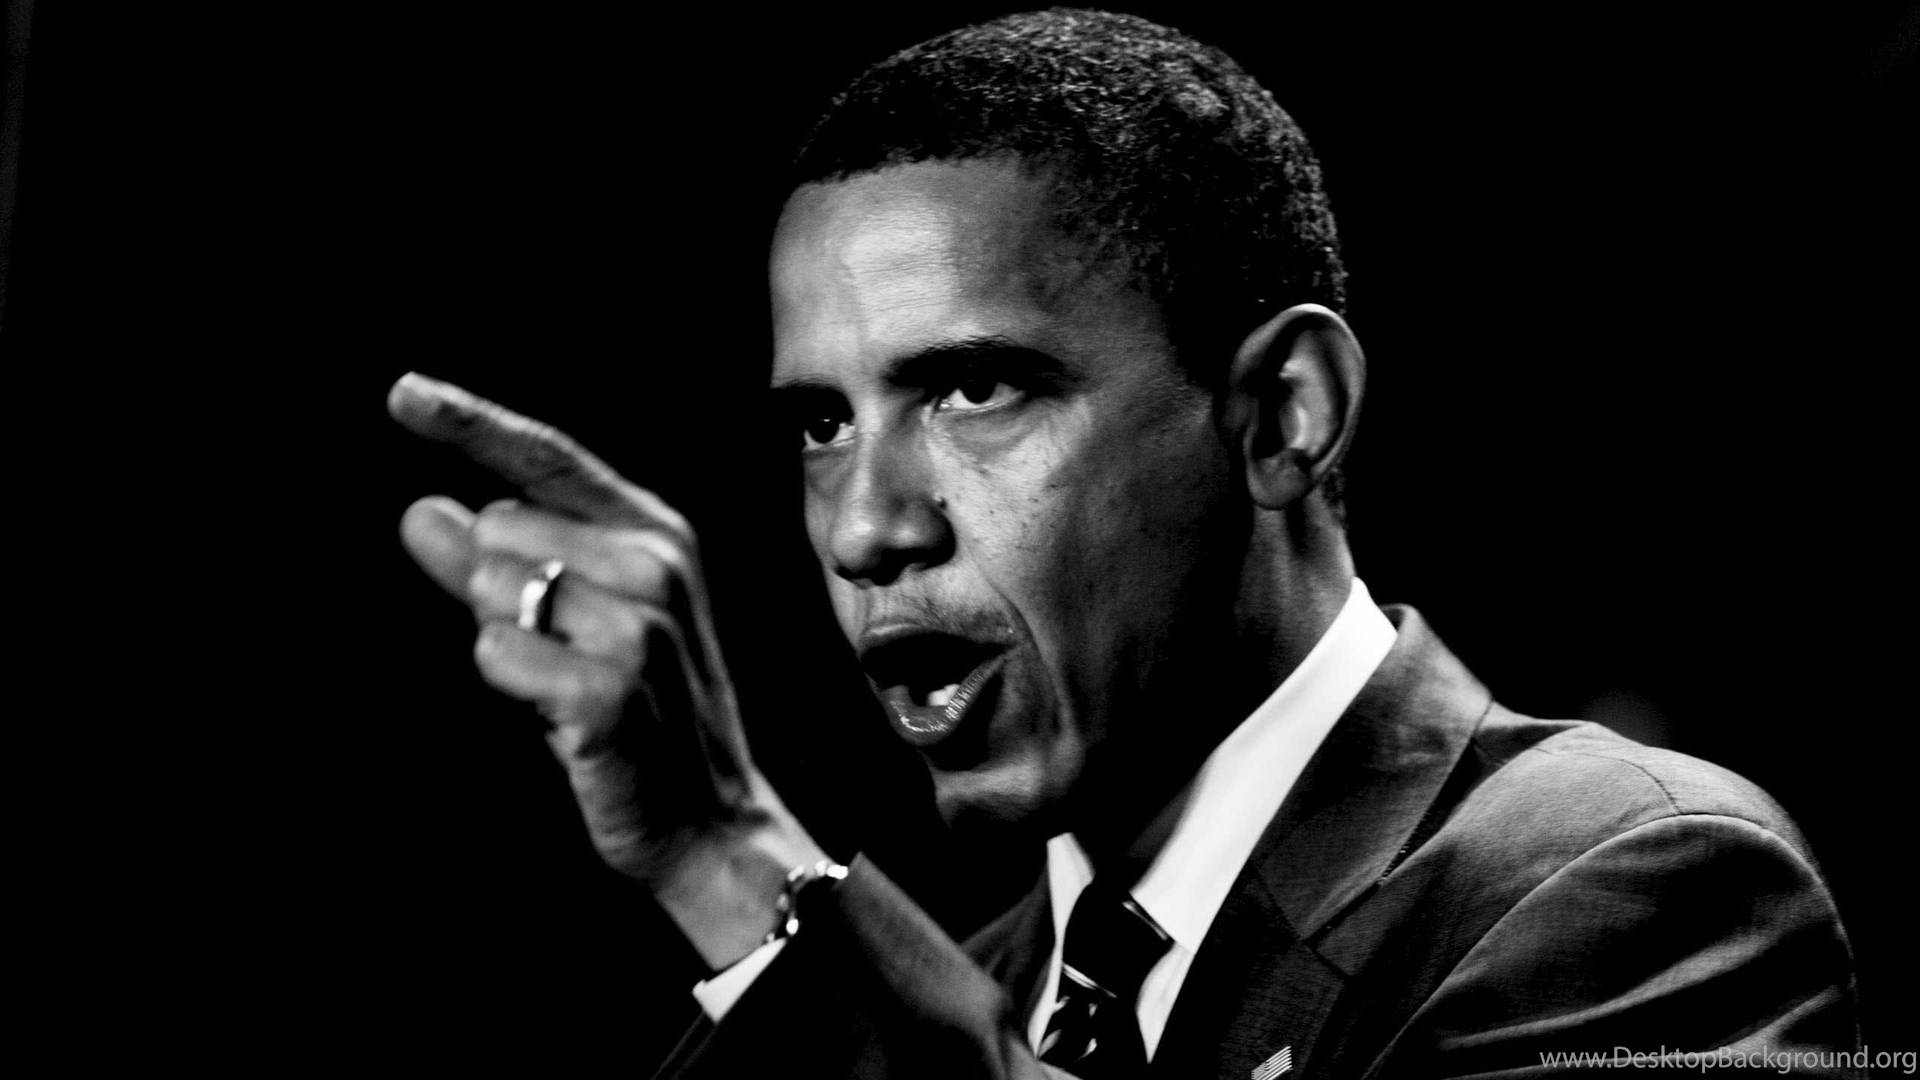 Caption: Barack Obama Delivering A Speech Wallpaper